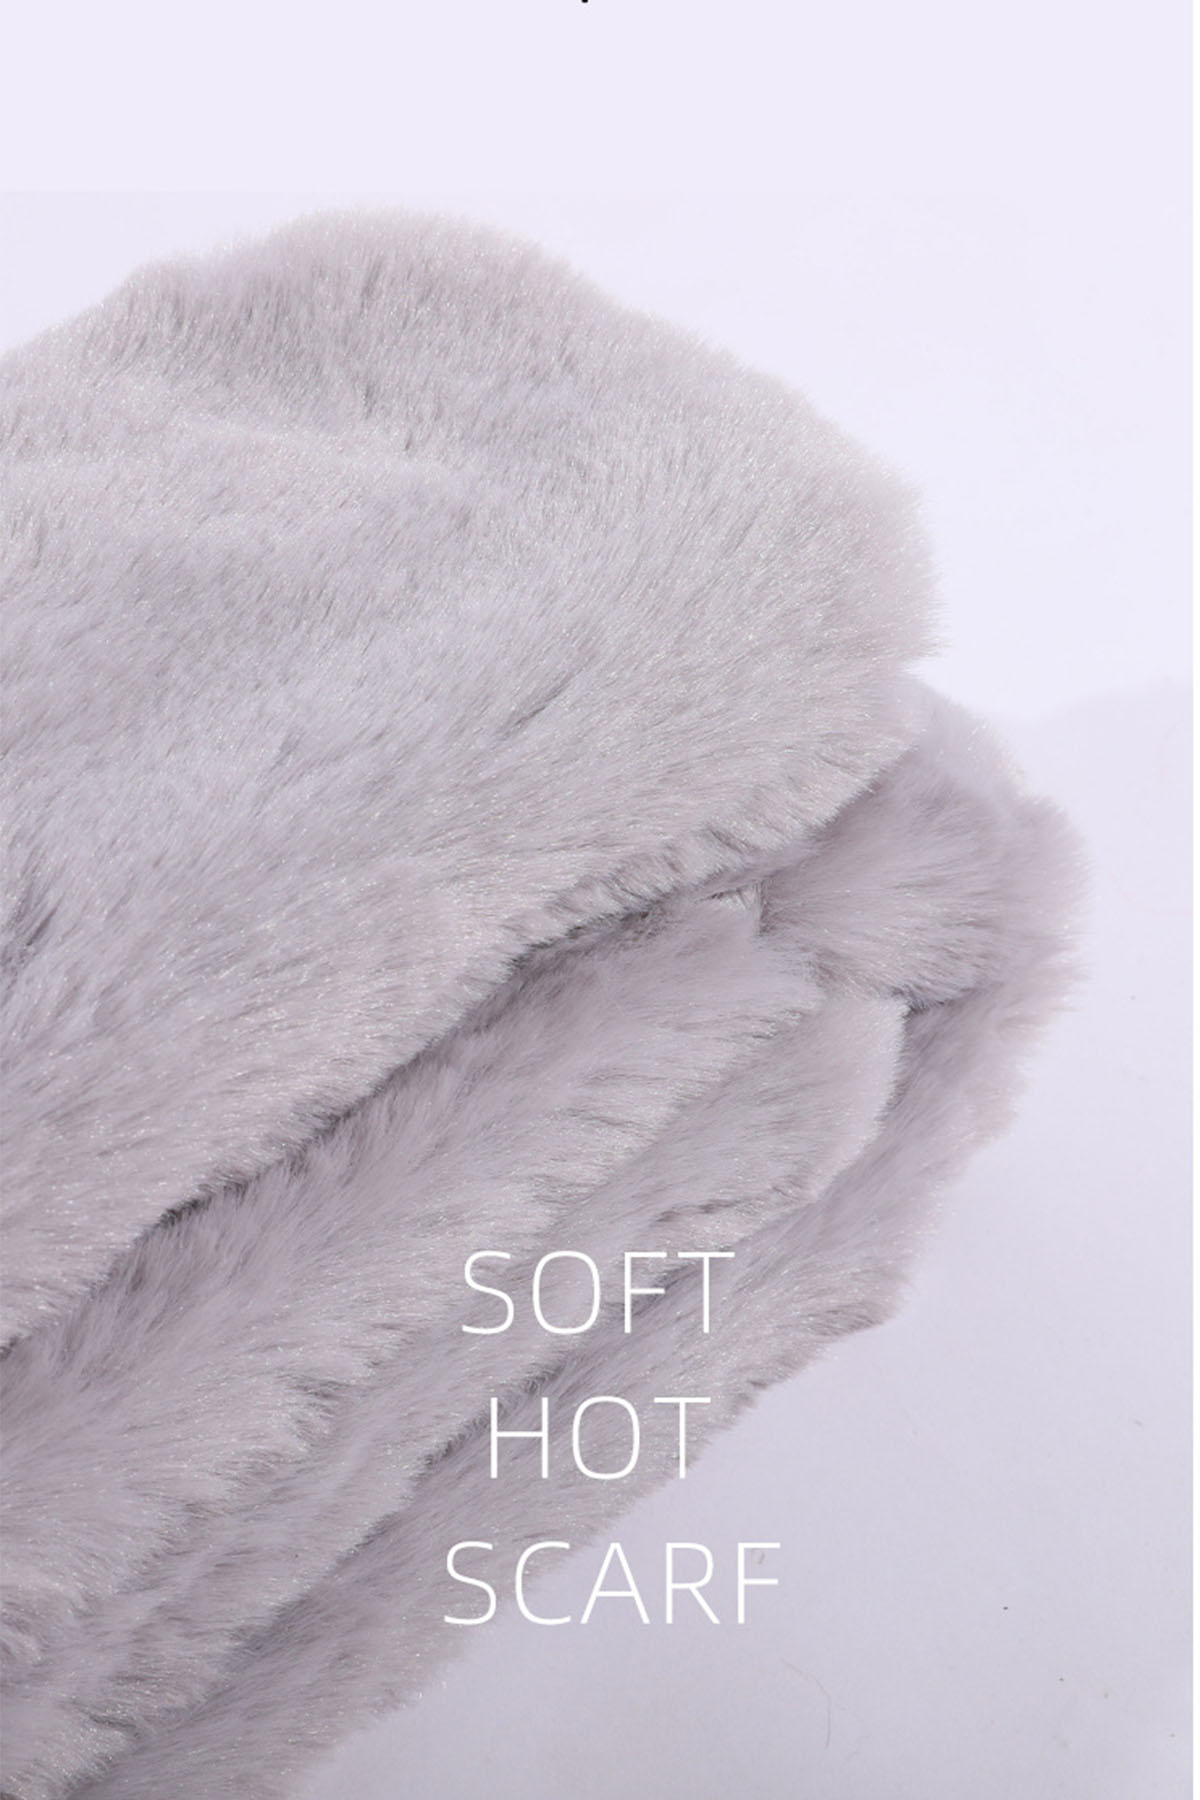 BRIGHTAKE Wärme Stil in Graphen-Heizschal und kuschelige Scarf für Einem: heating Wohlfühlmomente